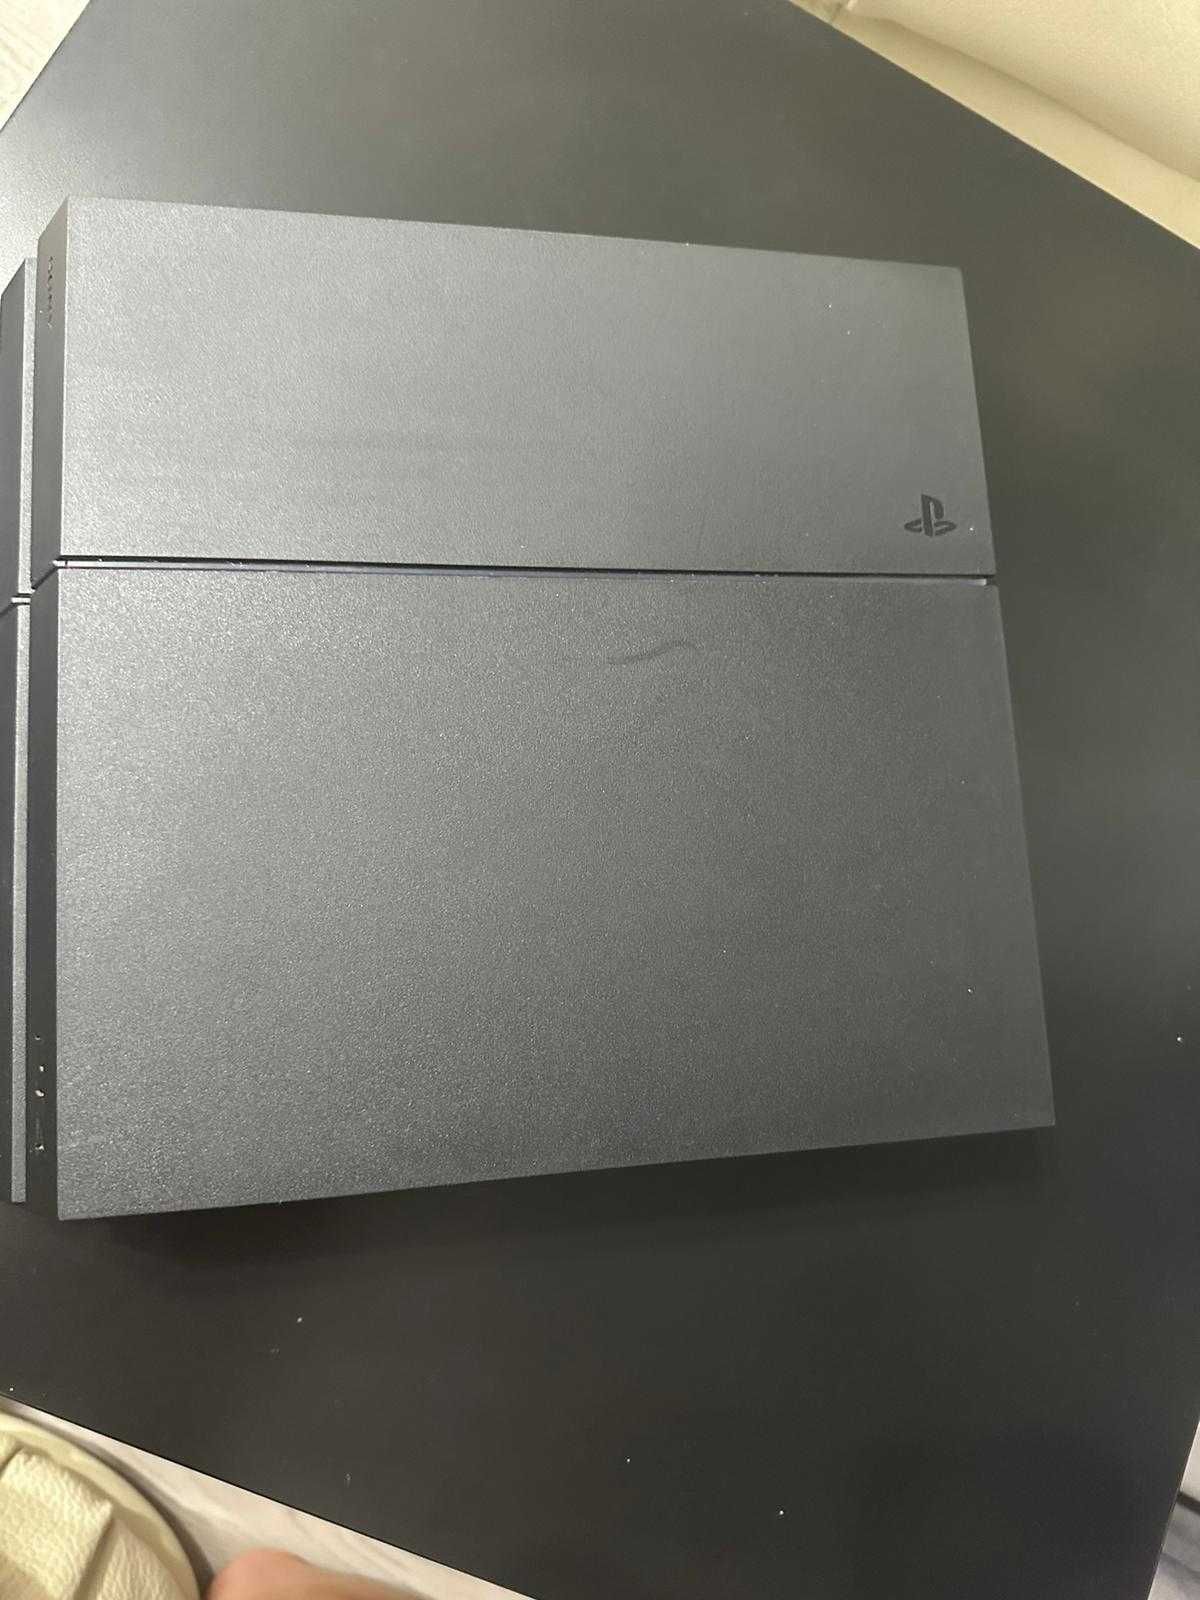 PlayStation 4 de vanzare